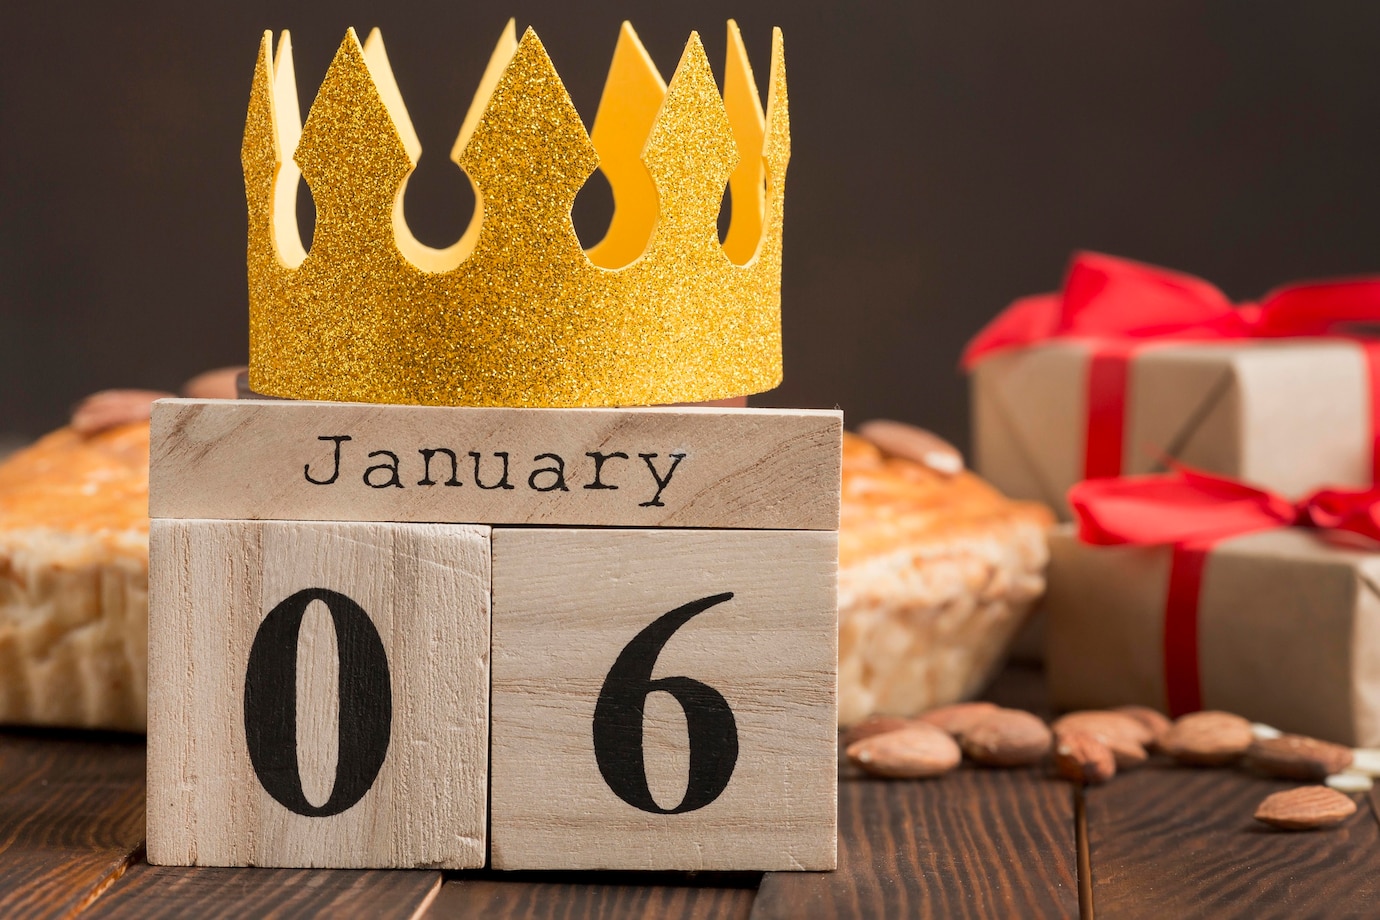 La imagen muestra un calendario de madera que muestra la fecha del seis de enero con una corona hecha de papel dorado encima del calendario.